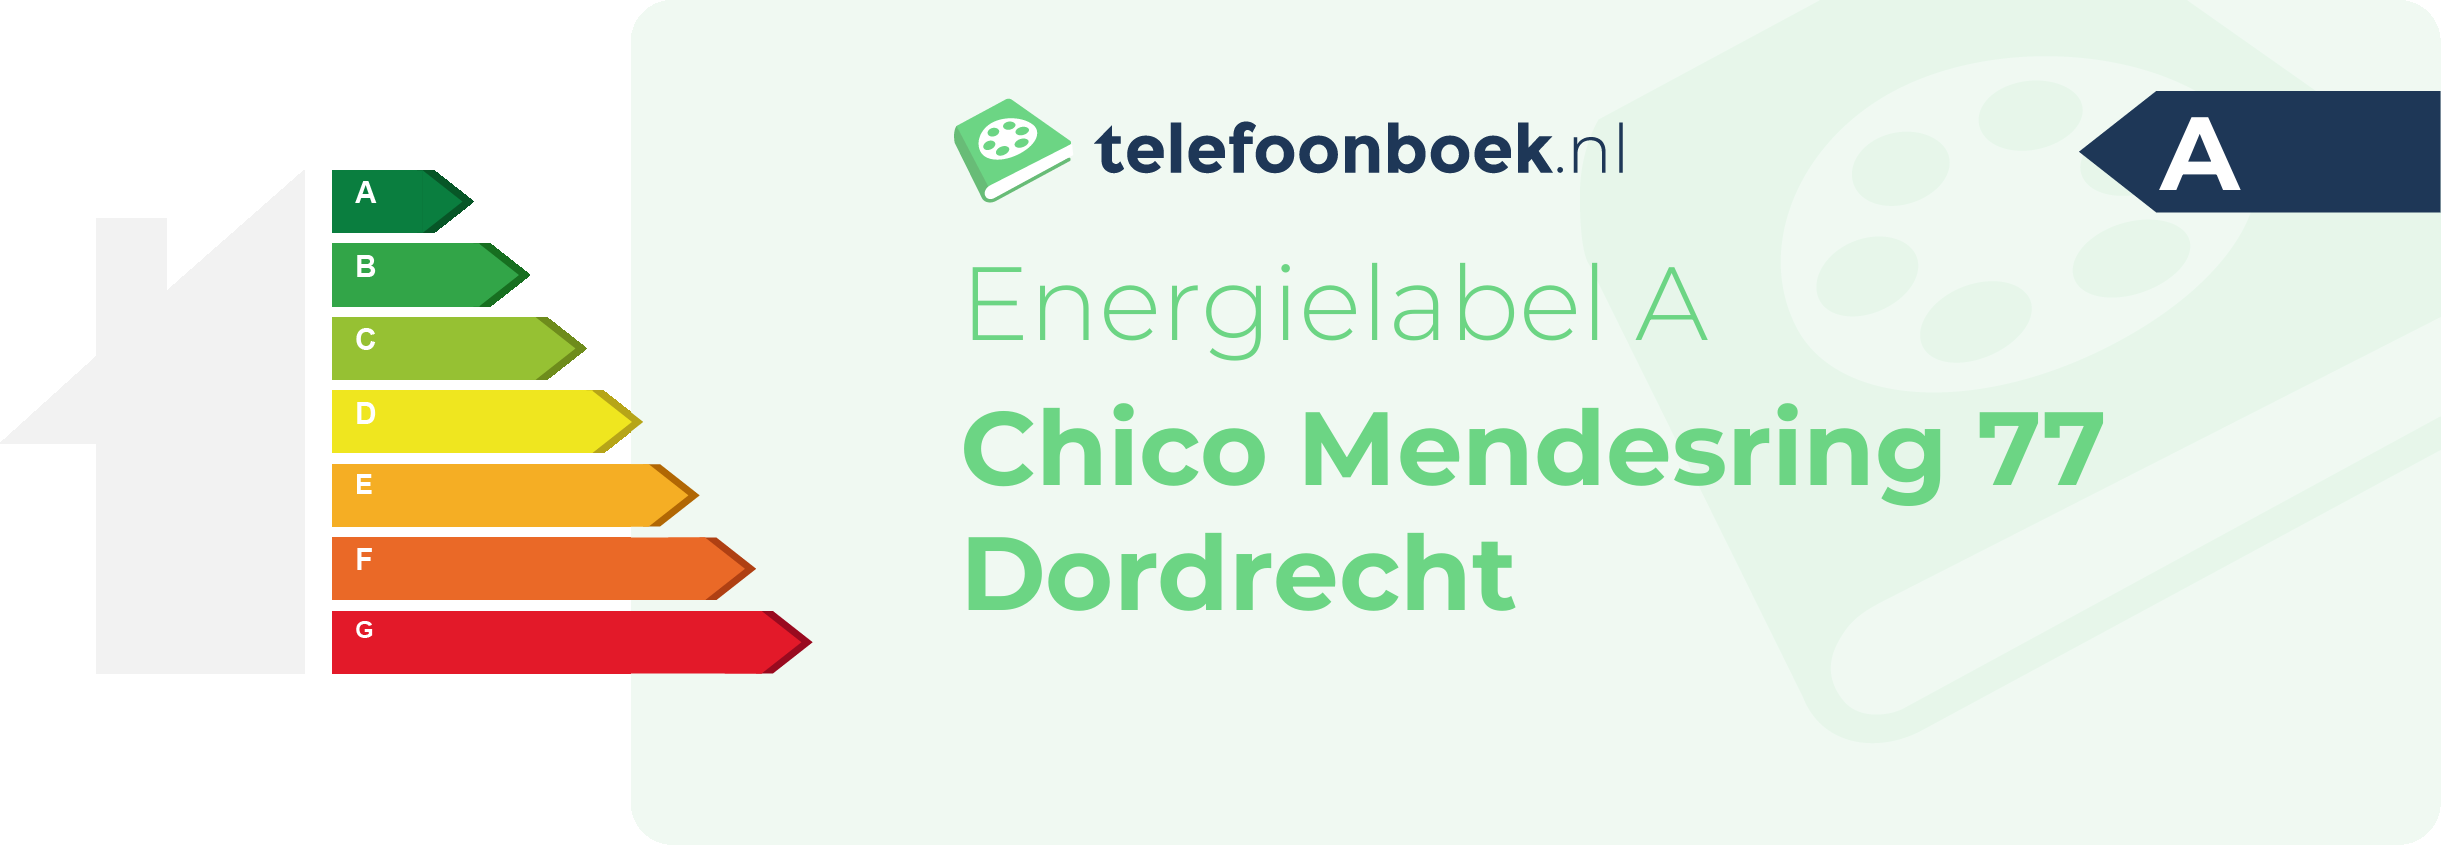 Energielabel Chico Mendesring 77 Dordrecht